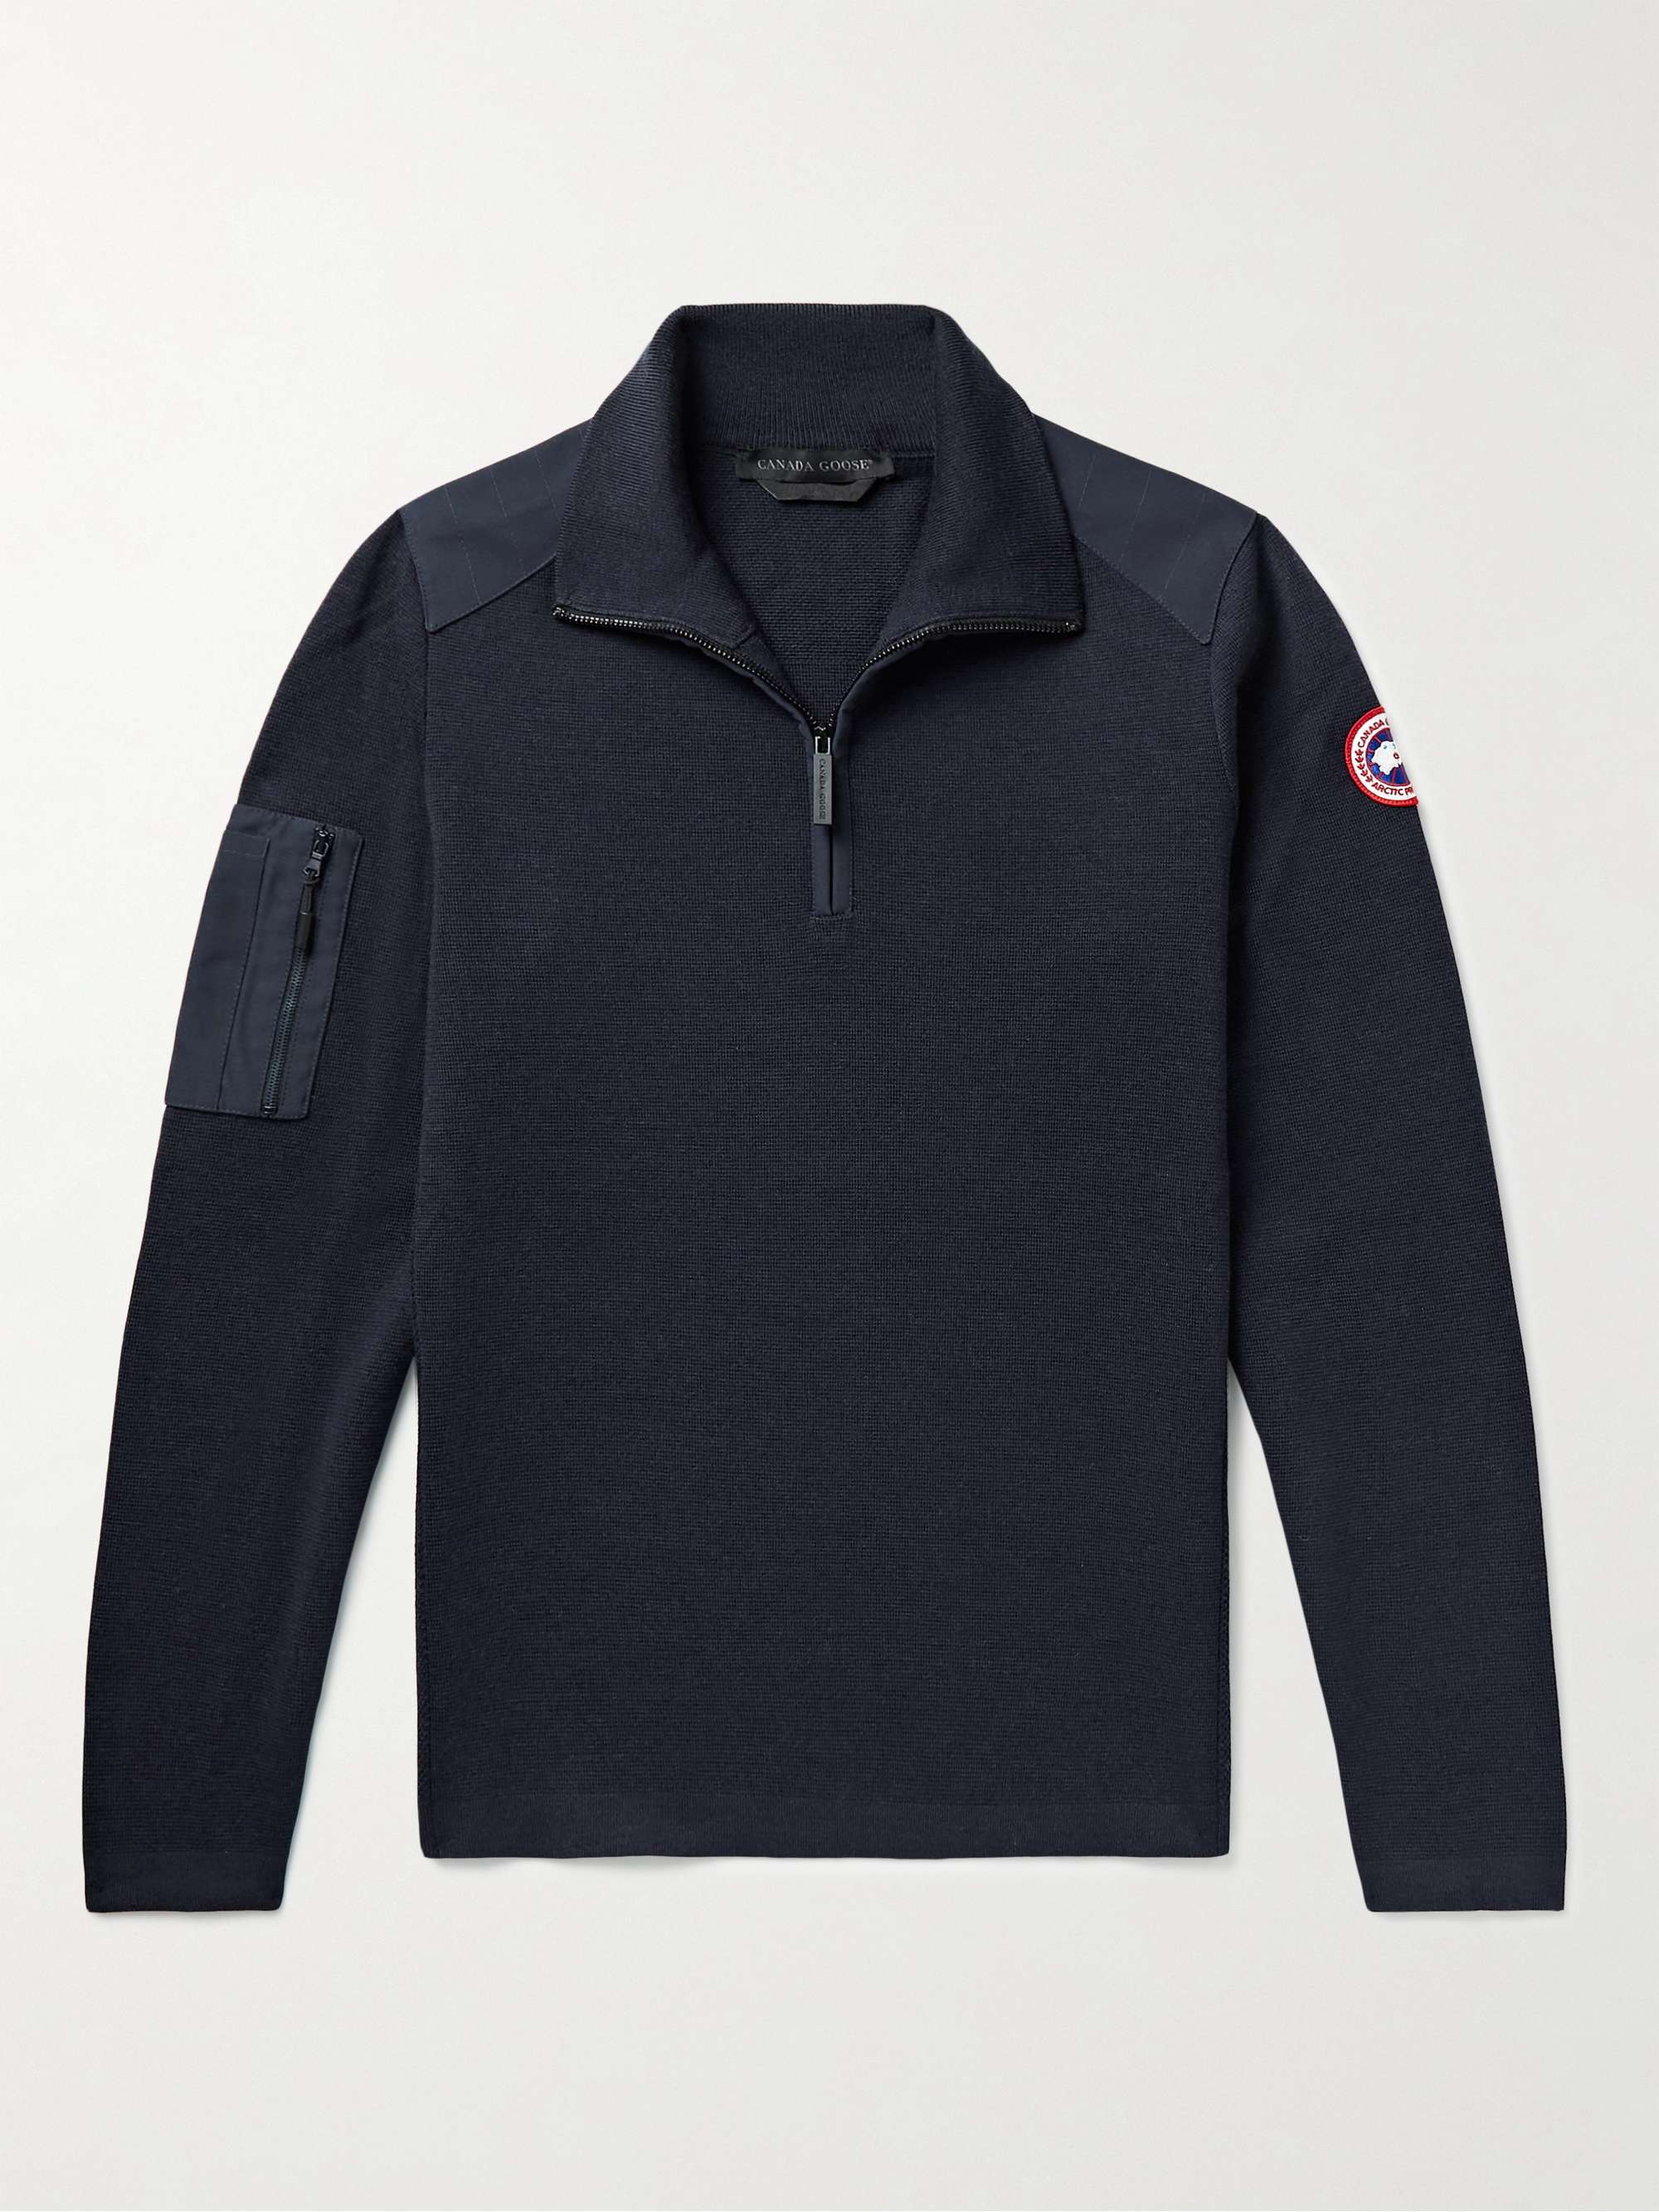 CANADA GOOSE Stormont Slim-Fit CORDURA-Trimmed Merino Wool Half-Zip Sweater  for Men | MR PORTER